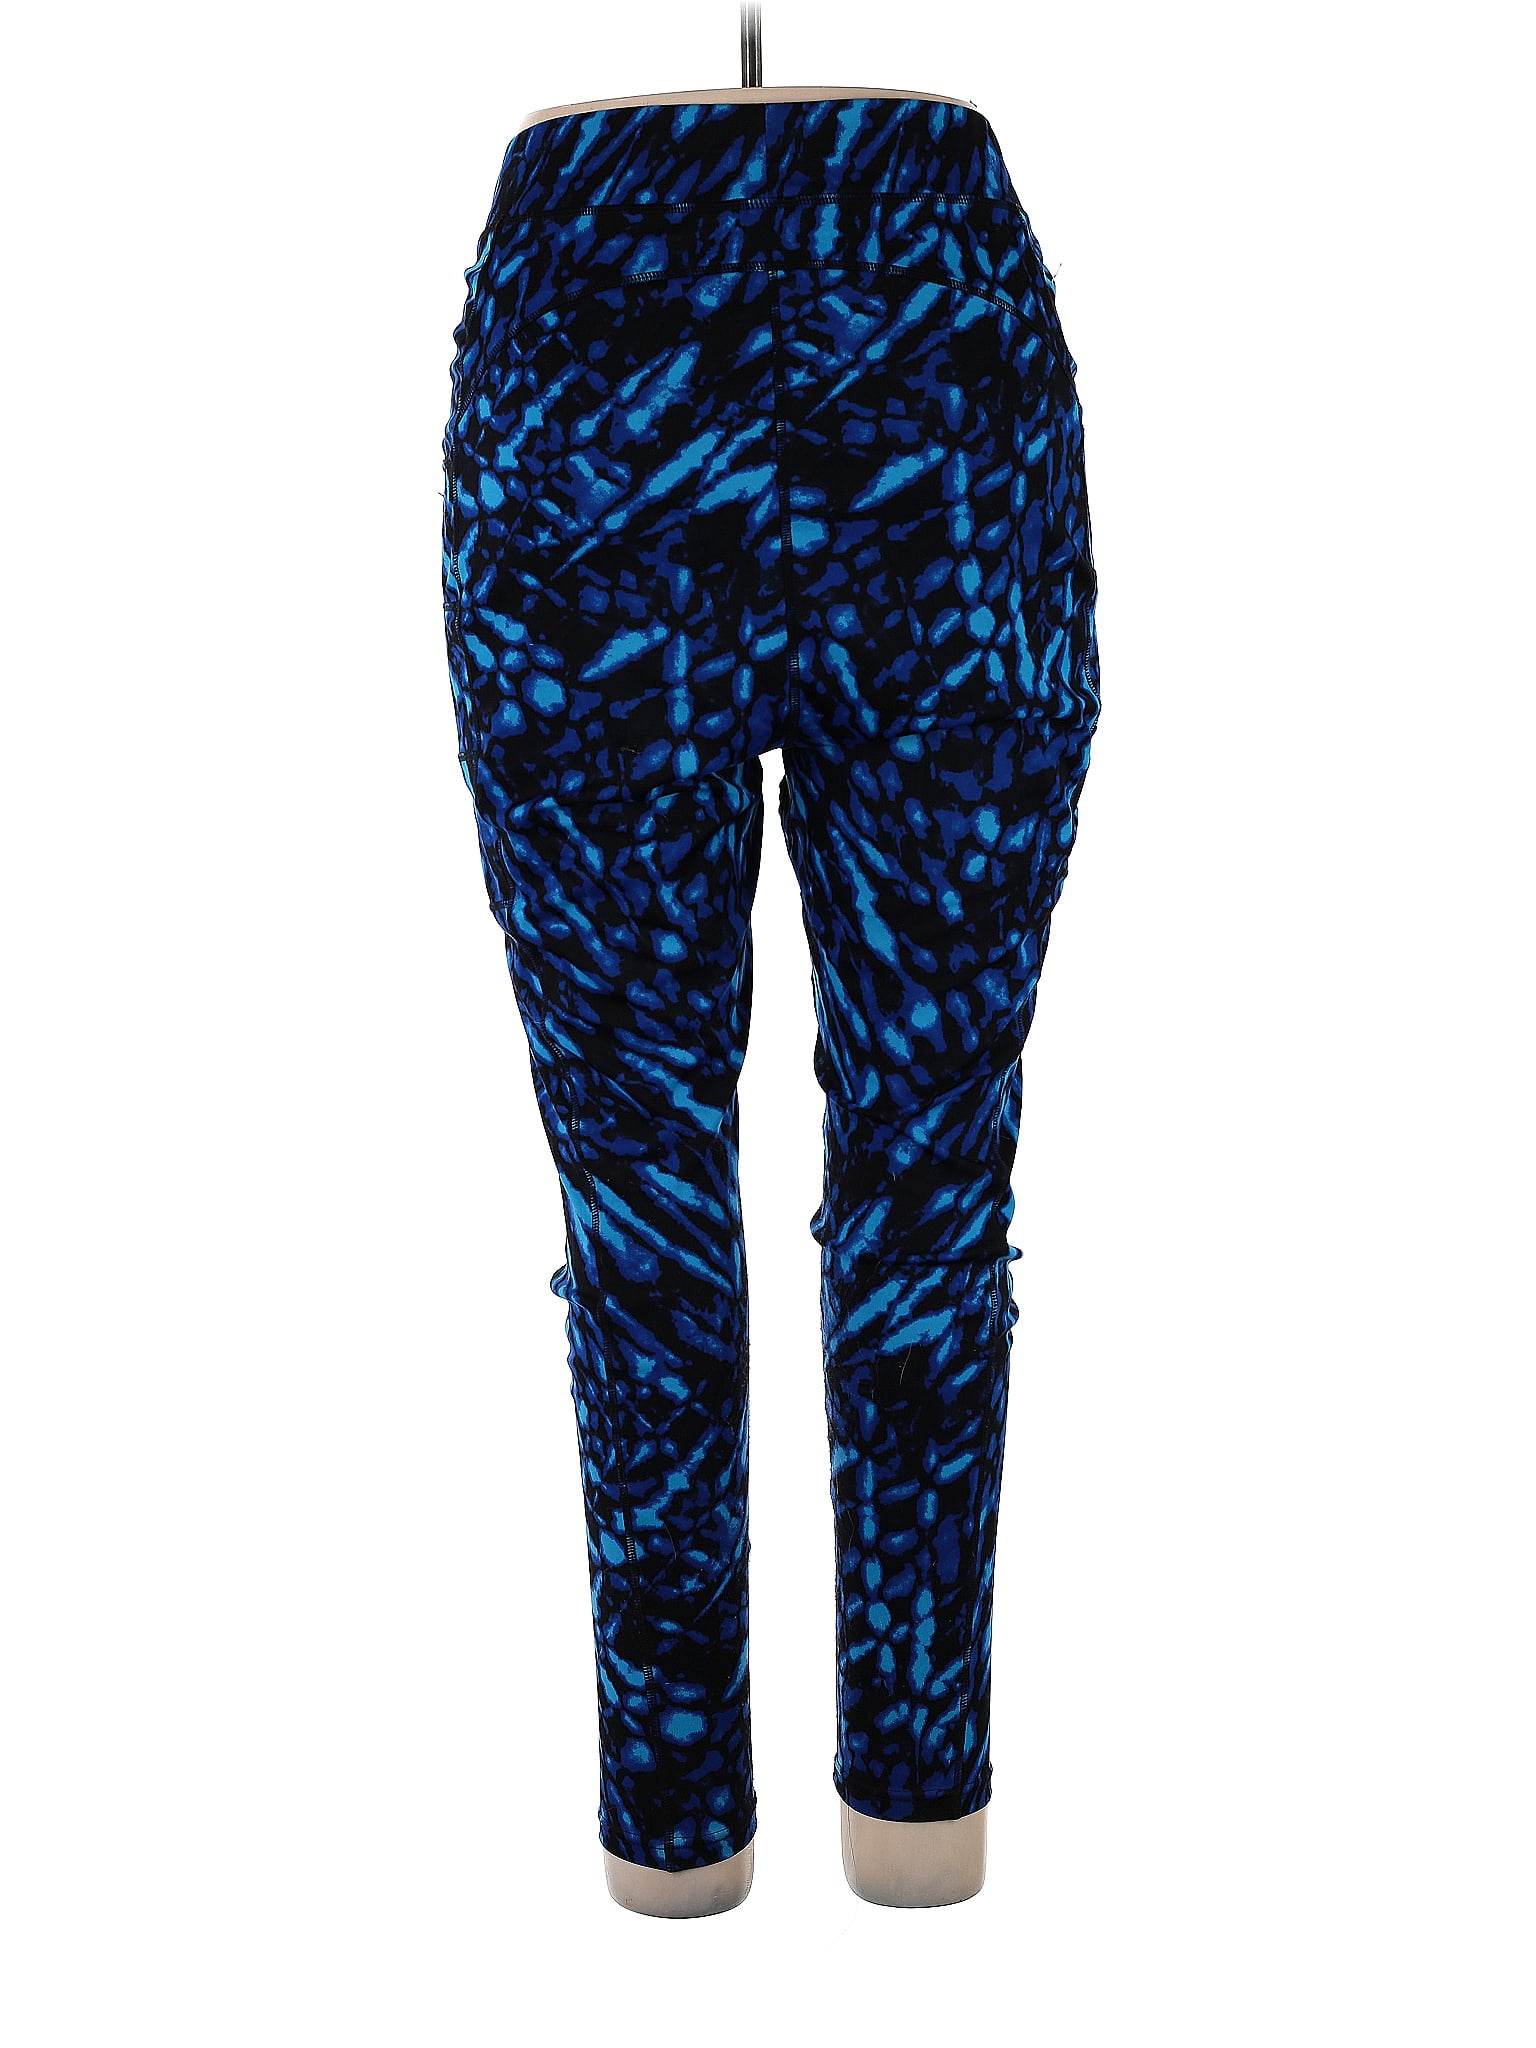 Pop Fit Leopard Print Multi Color Blue Leggings Size 2X (Plus) - 60% off